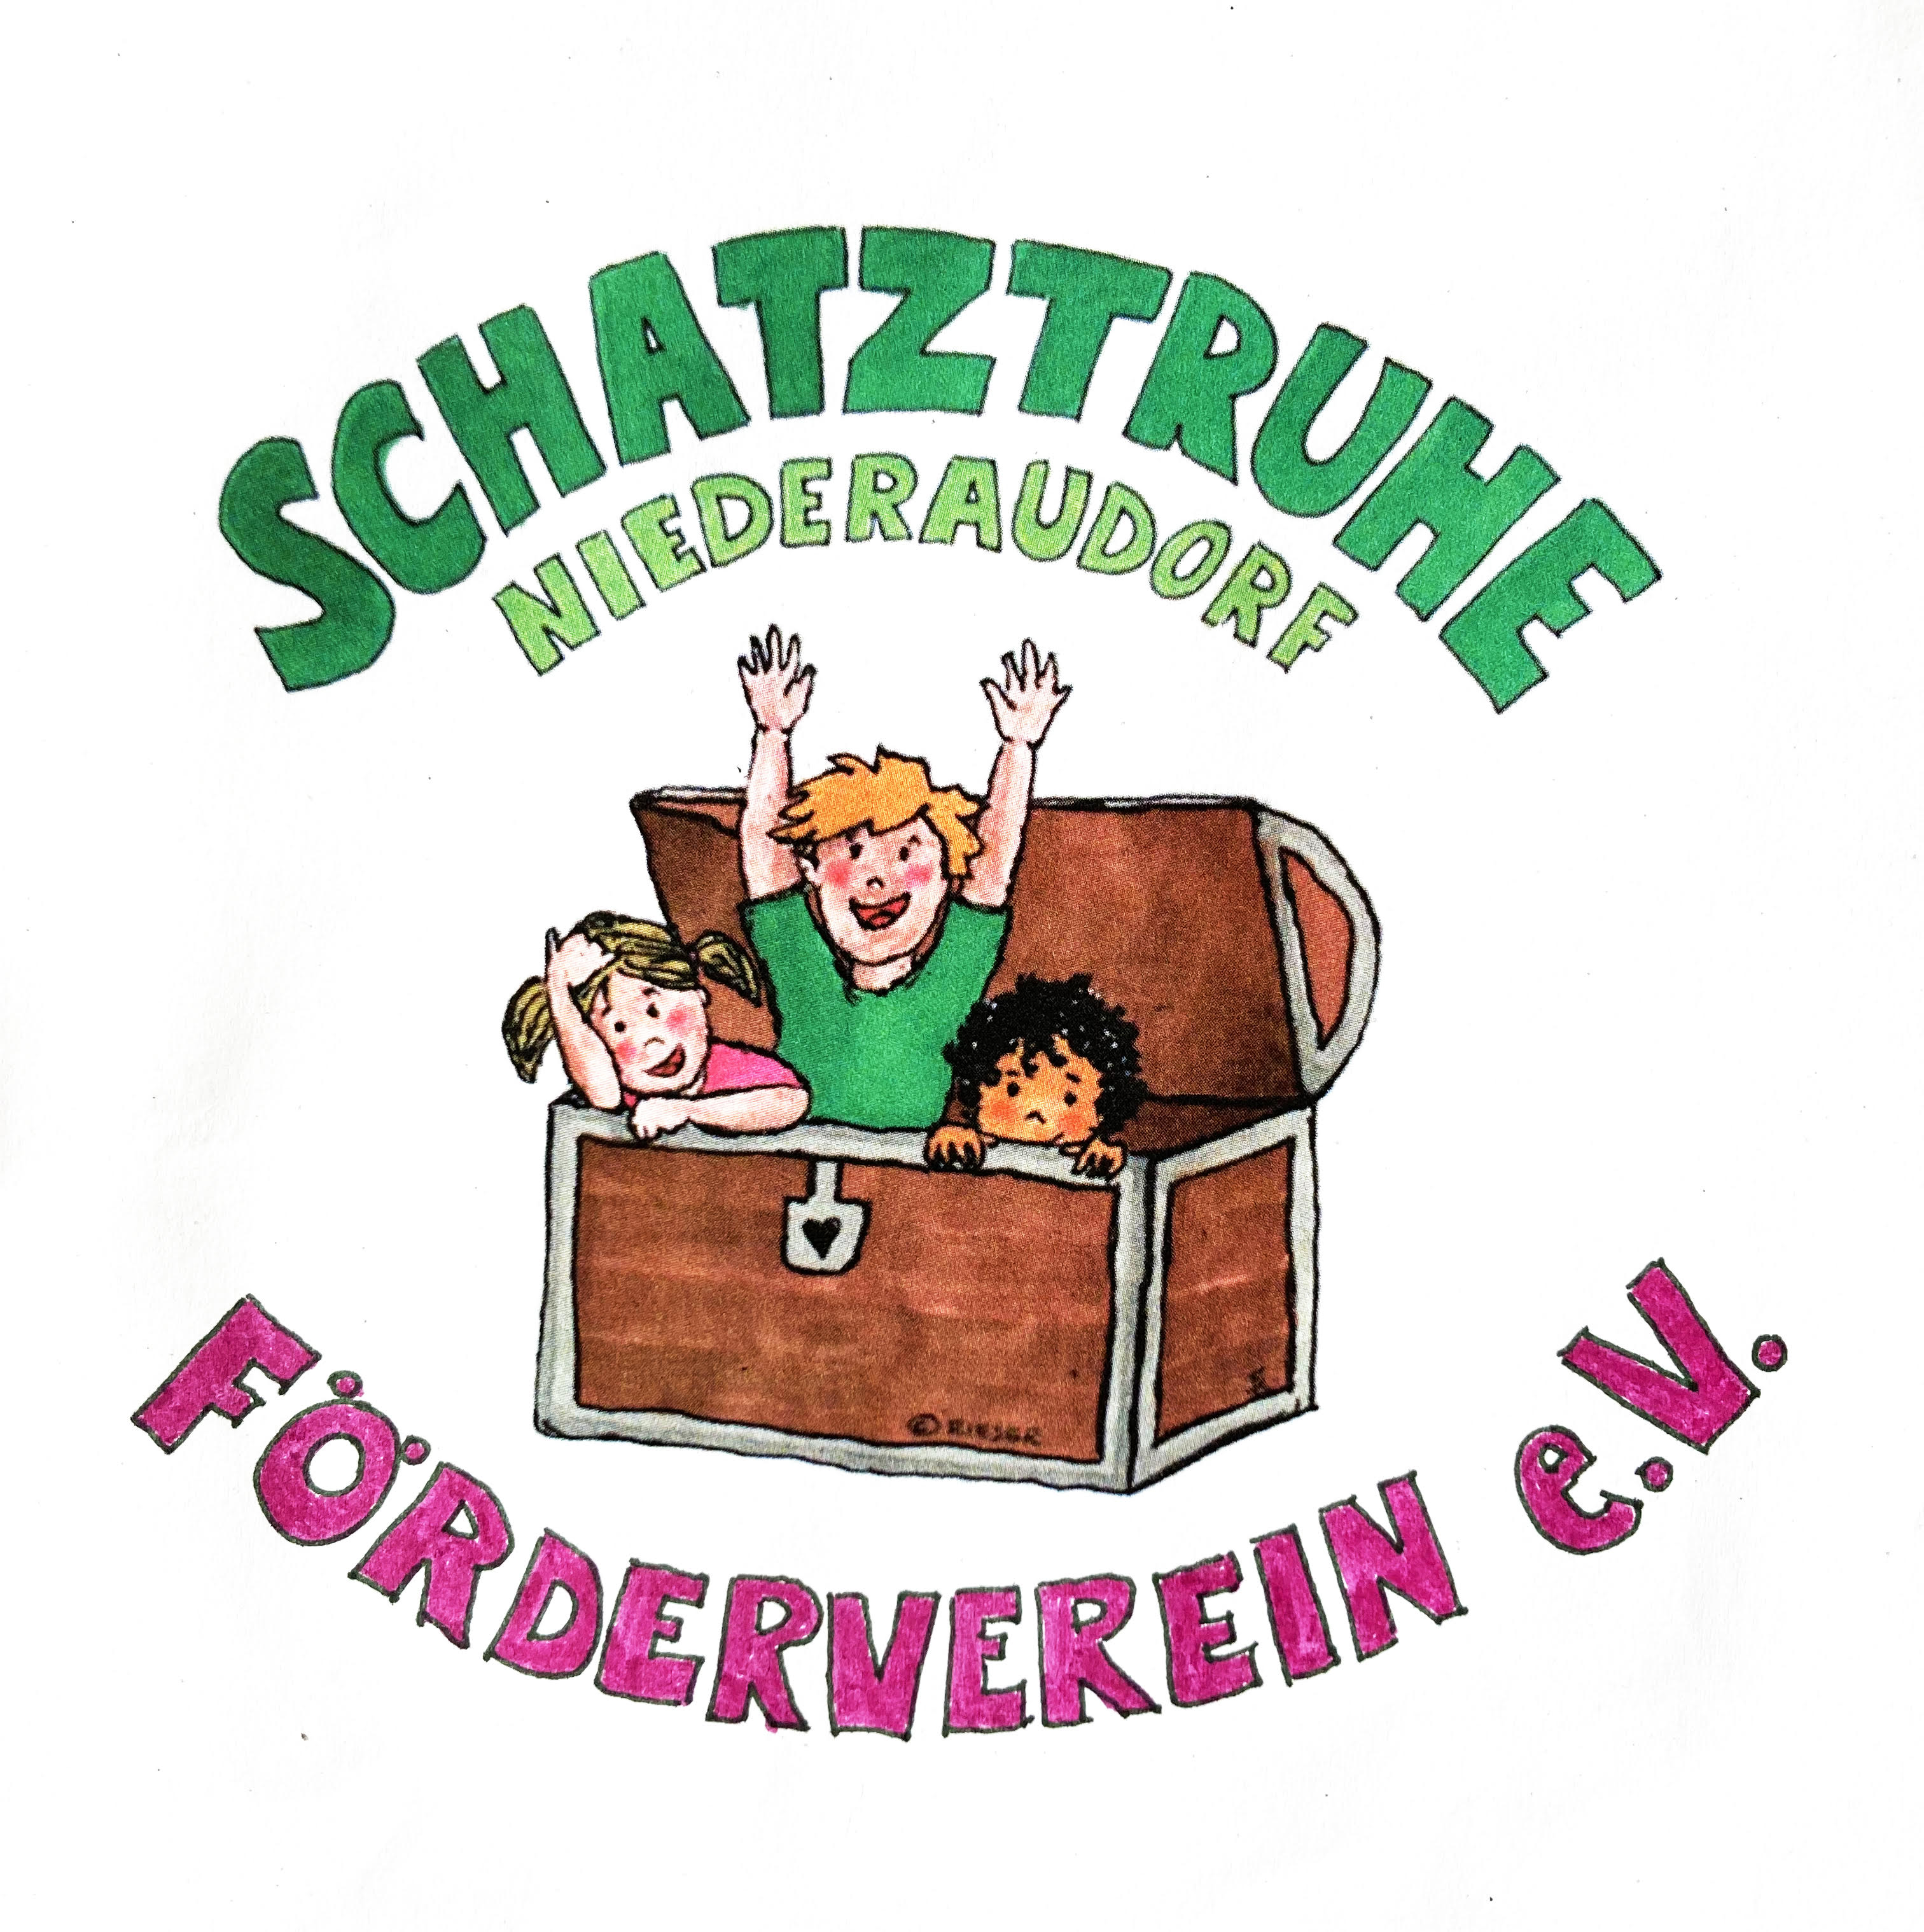 Logo_Foerderverein.jpg